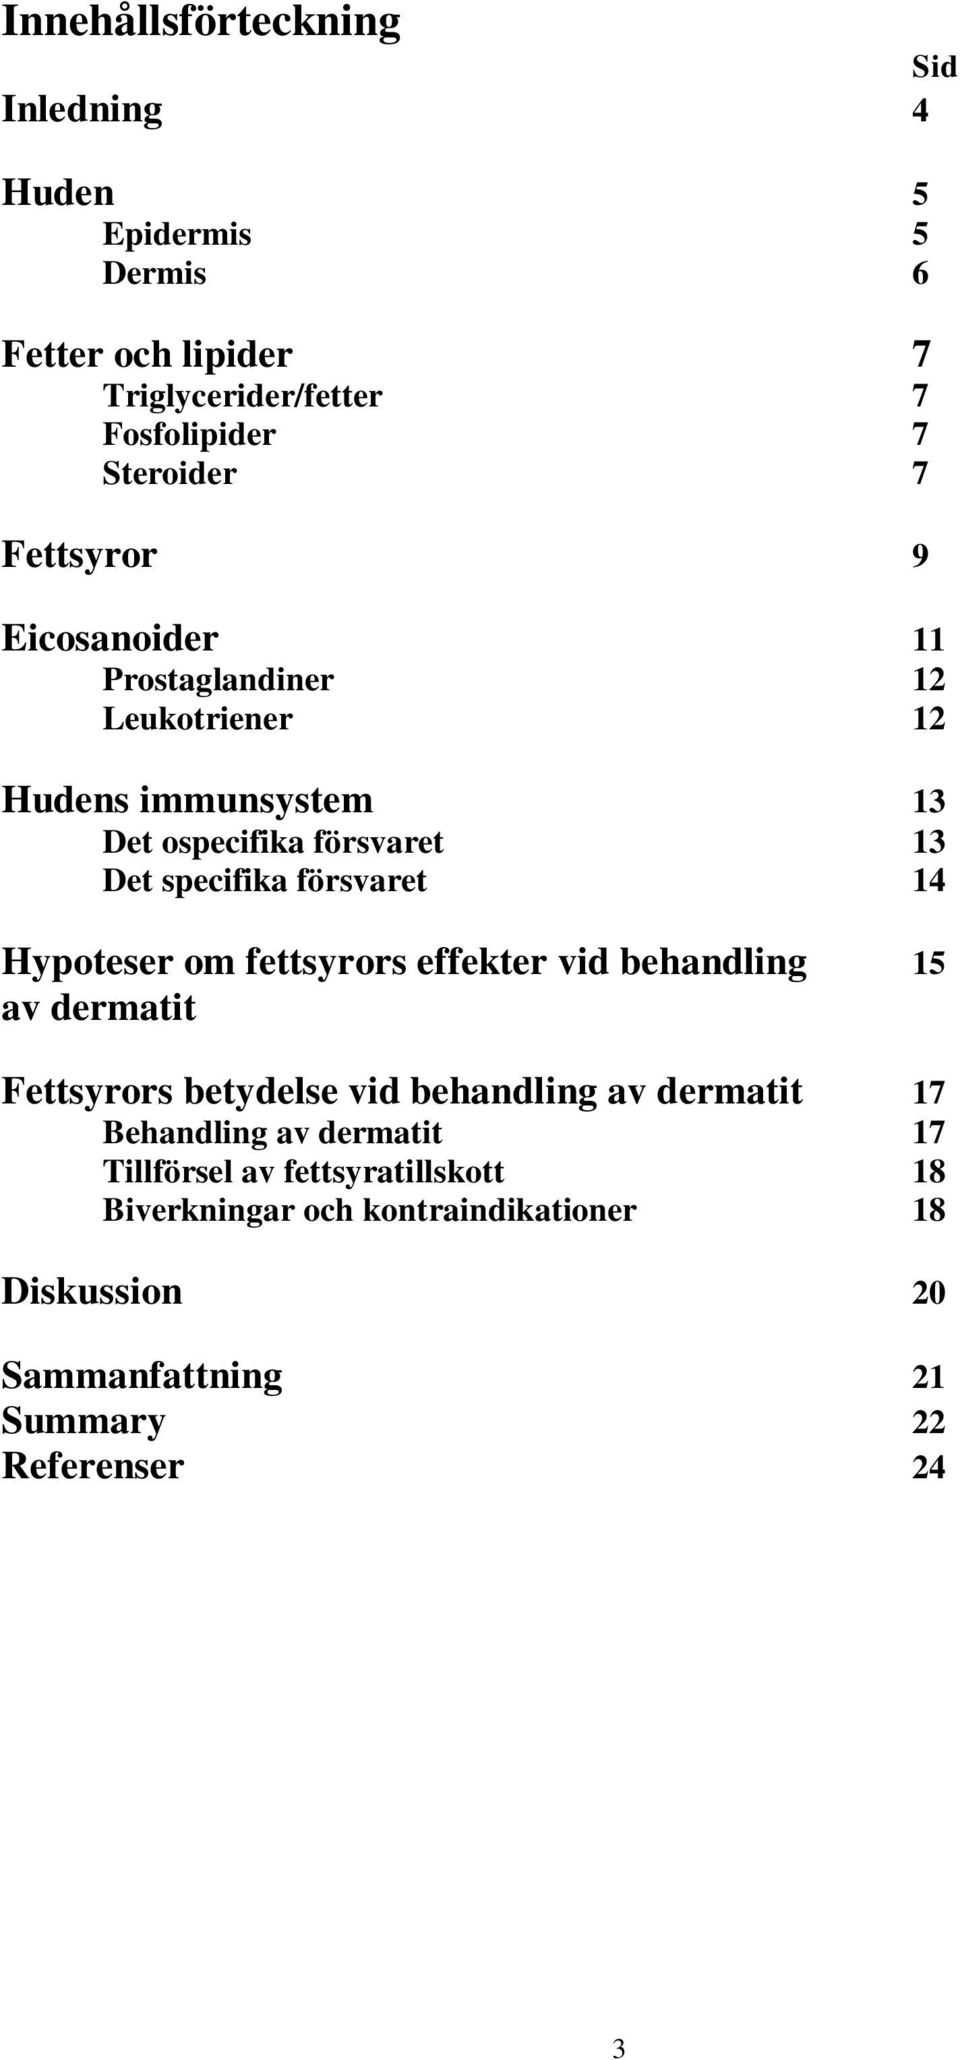 14 Hypoteser om fettsyrors effekter vid behandling 15 av dermatit Fettsyrors betydelse vid behandling av dermatit 17 Behandling av